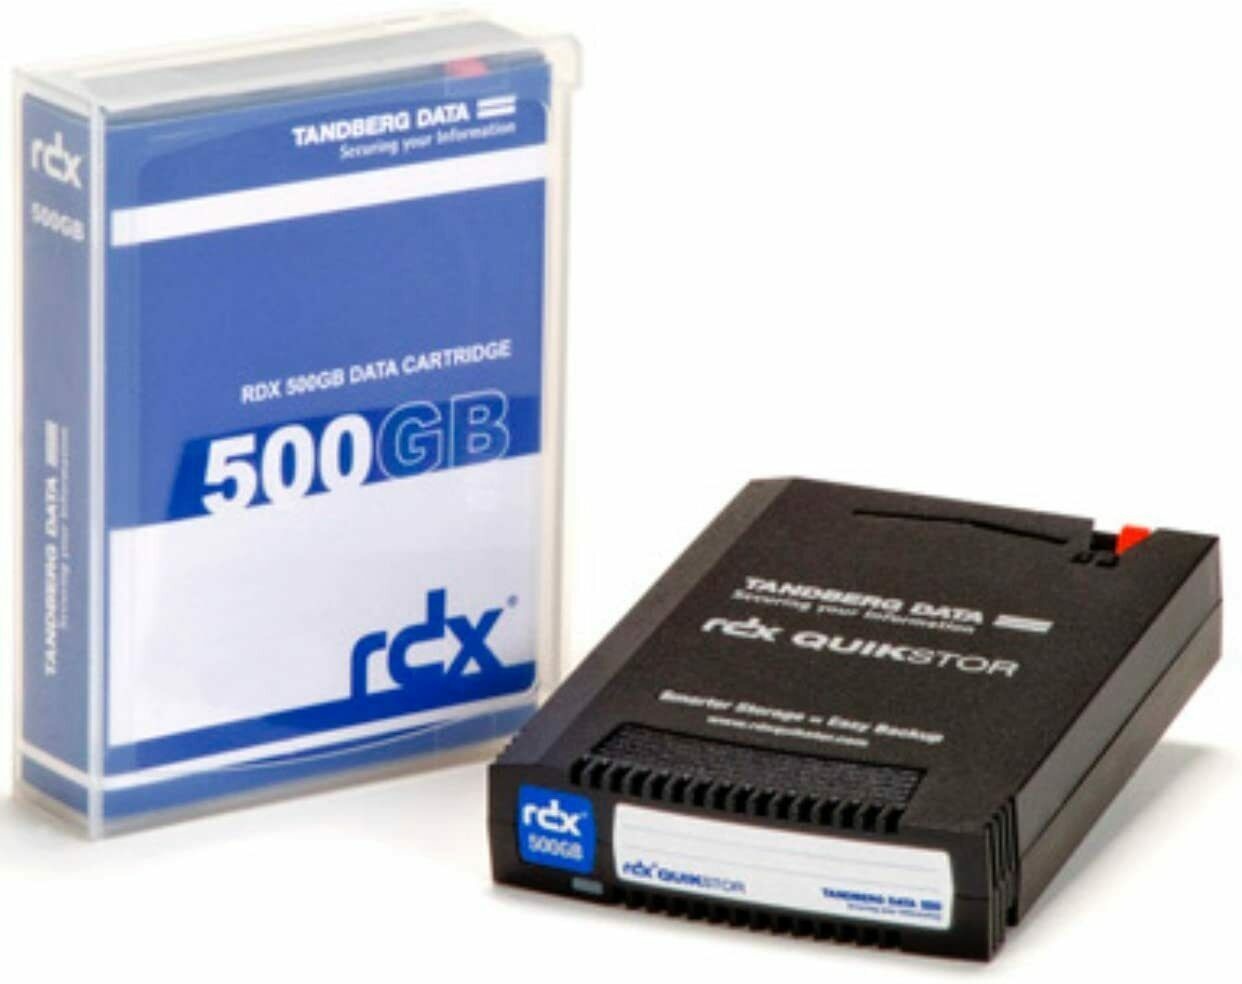 Tandberg 8541-RDX Quikstor 500GB Data Cartridge SATA USB 3.0 - BuyGreen